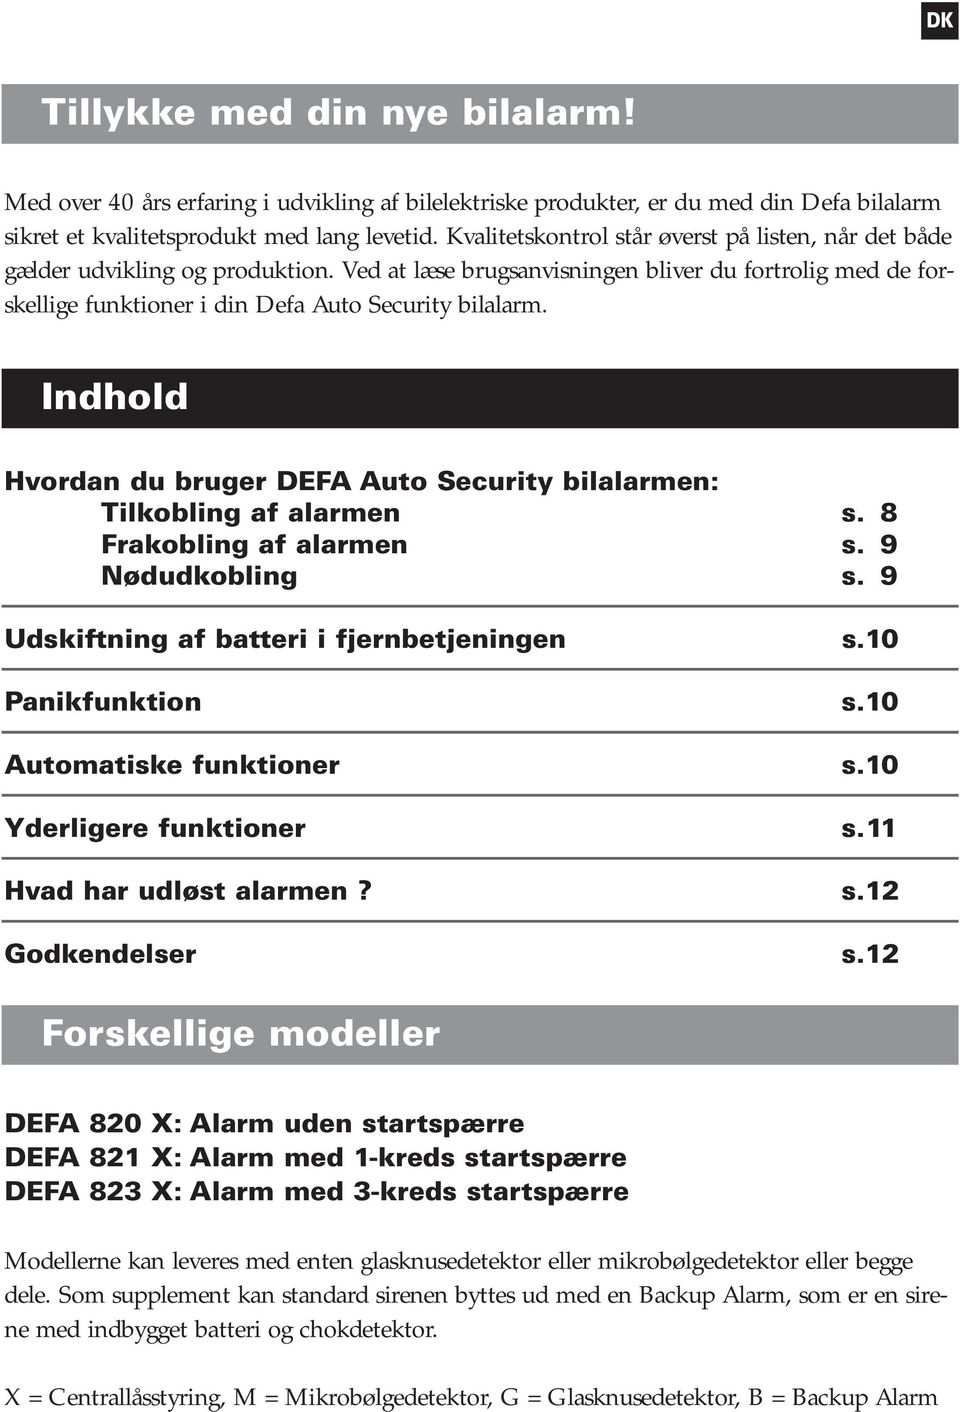 Indhold Hvordan du bruger DEFA Auto Security bilalarmen: Tilkobling af alarmen s. 8 Frakobling af alarmen s. 9 Nødudkobling s. 9 Udskiftning af batteri i fjernbetjeningen s.10 Panikfunktion s.